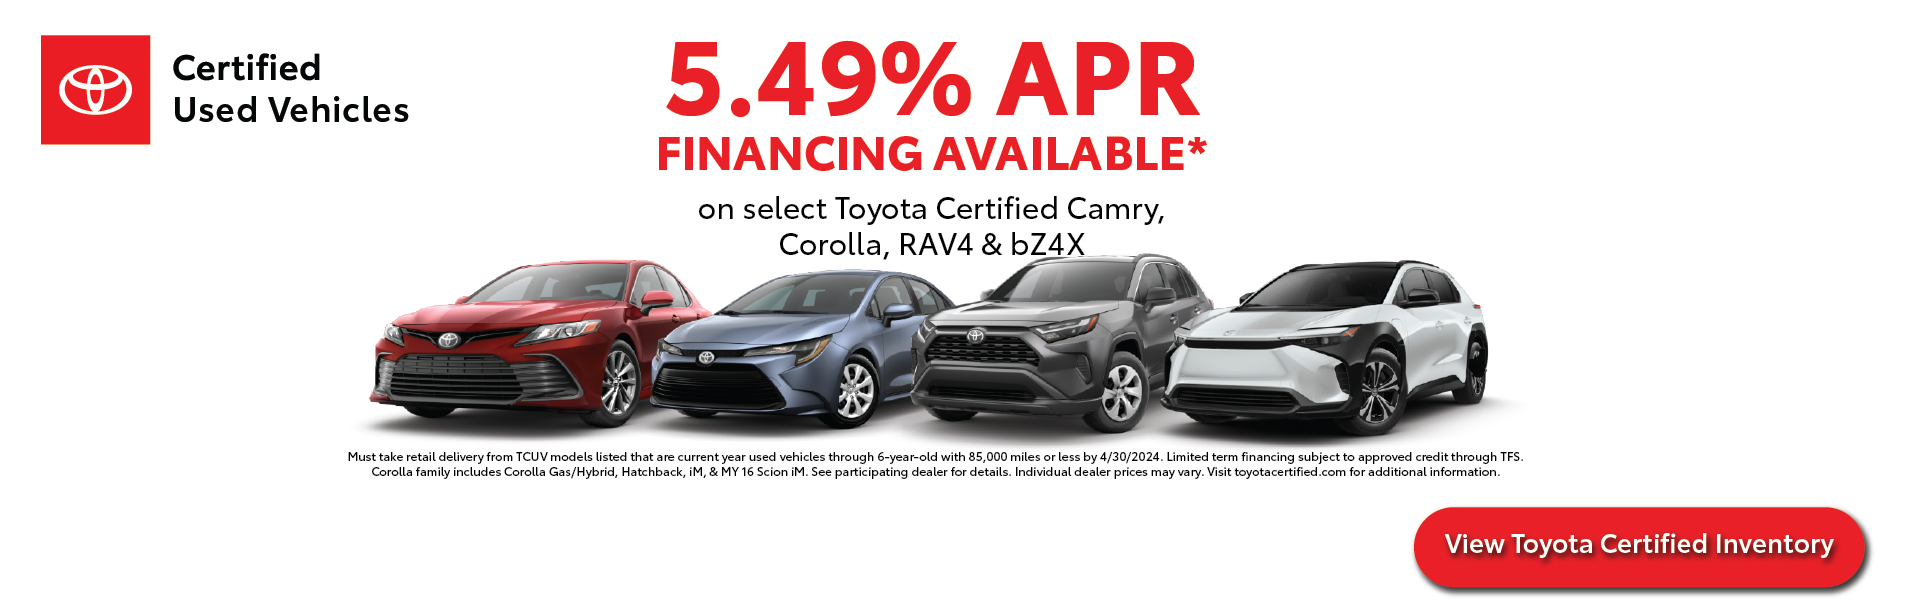 Toyota Certified Used Vehicle Offer | LeadCar Toyota La Crosse in La Crosse WI